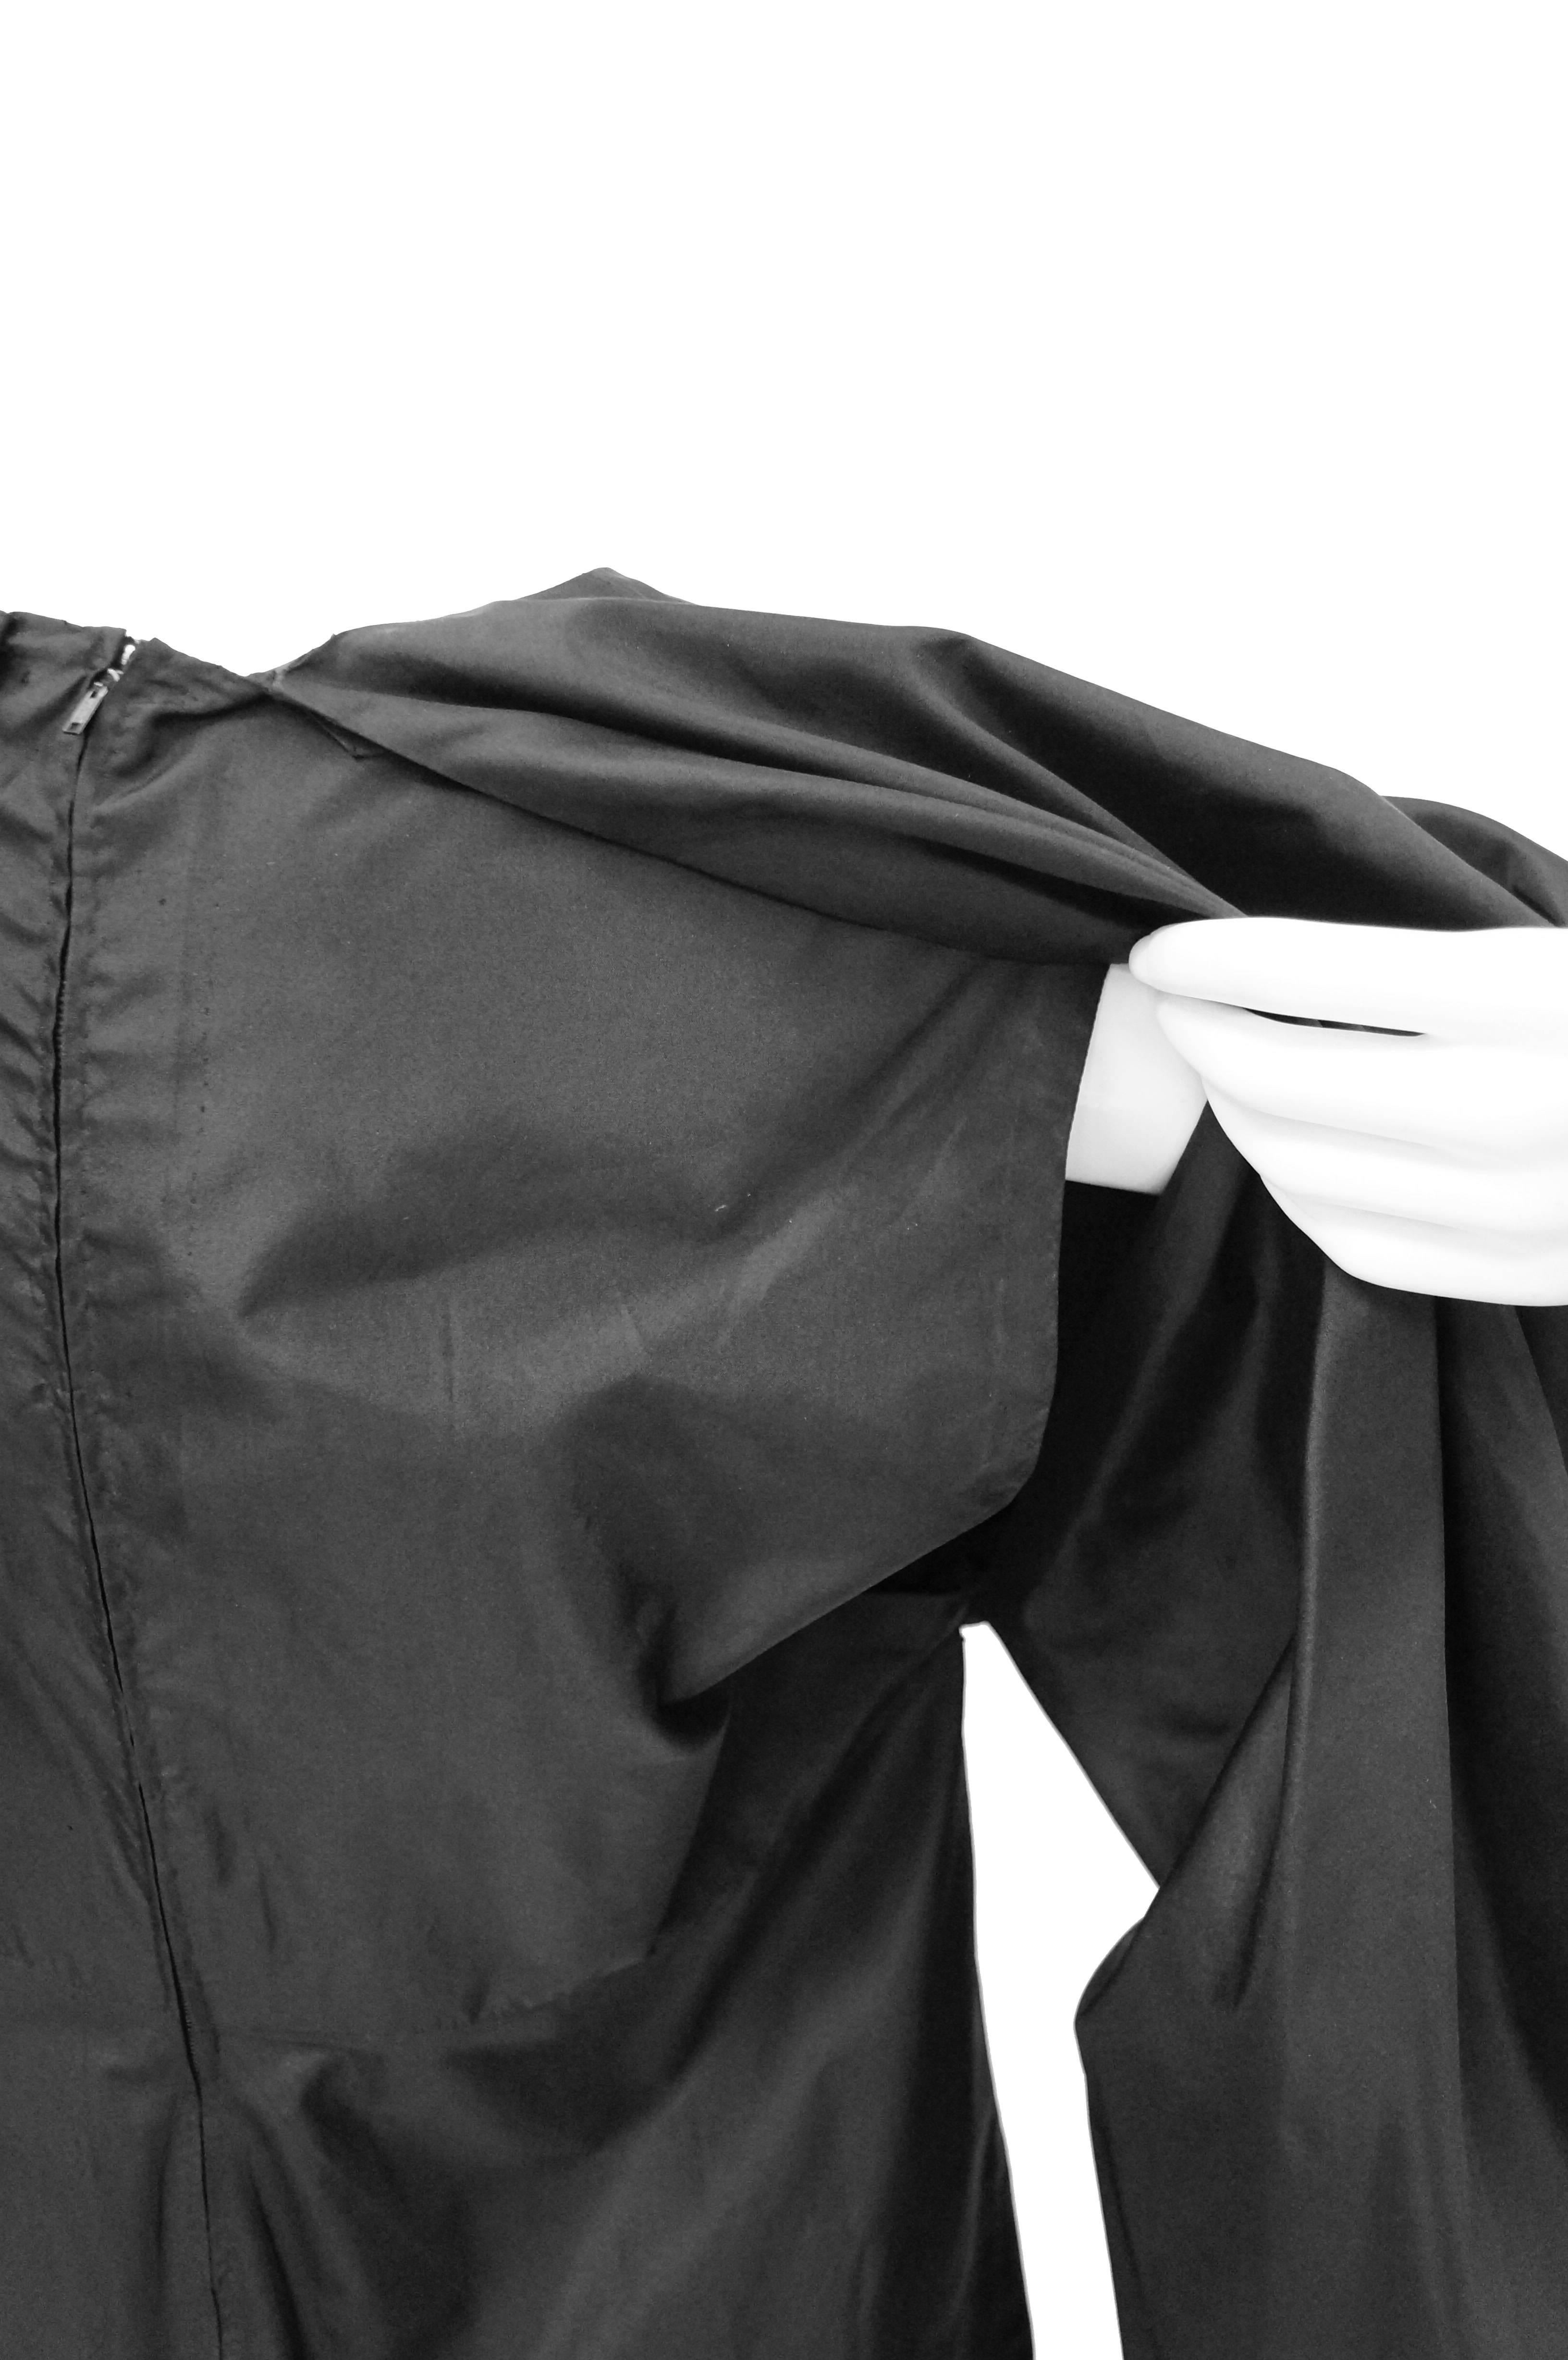 Madame Grès - Robe noire en soie haute couture 